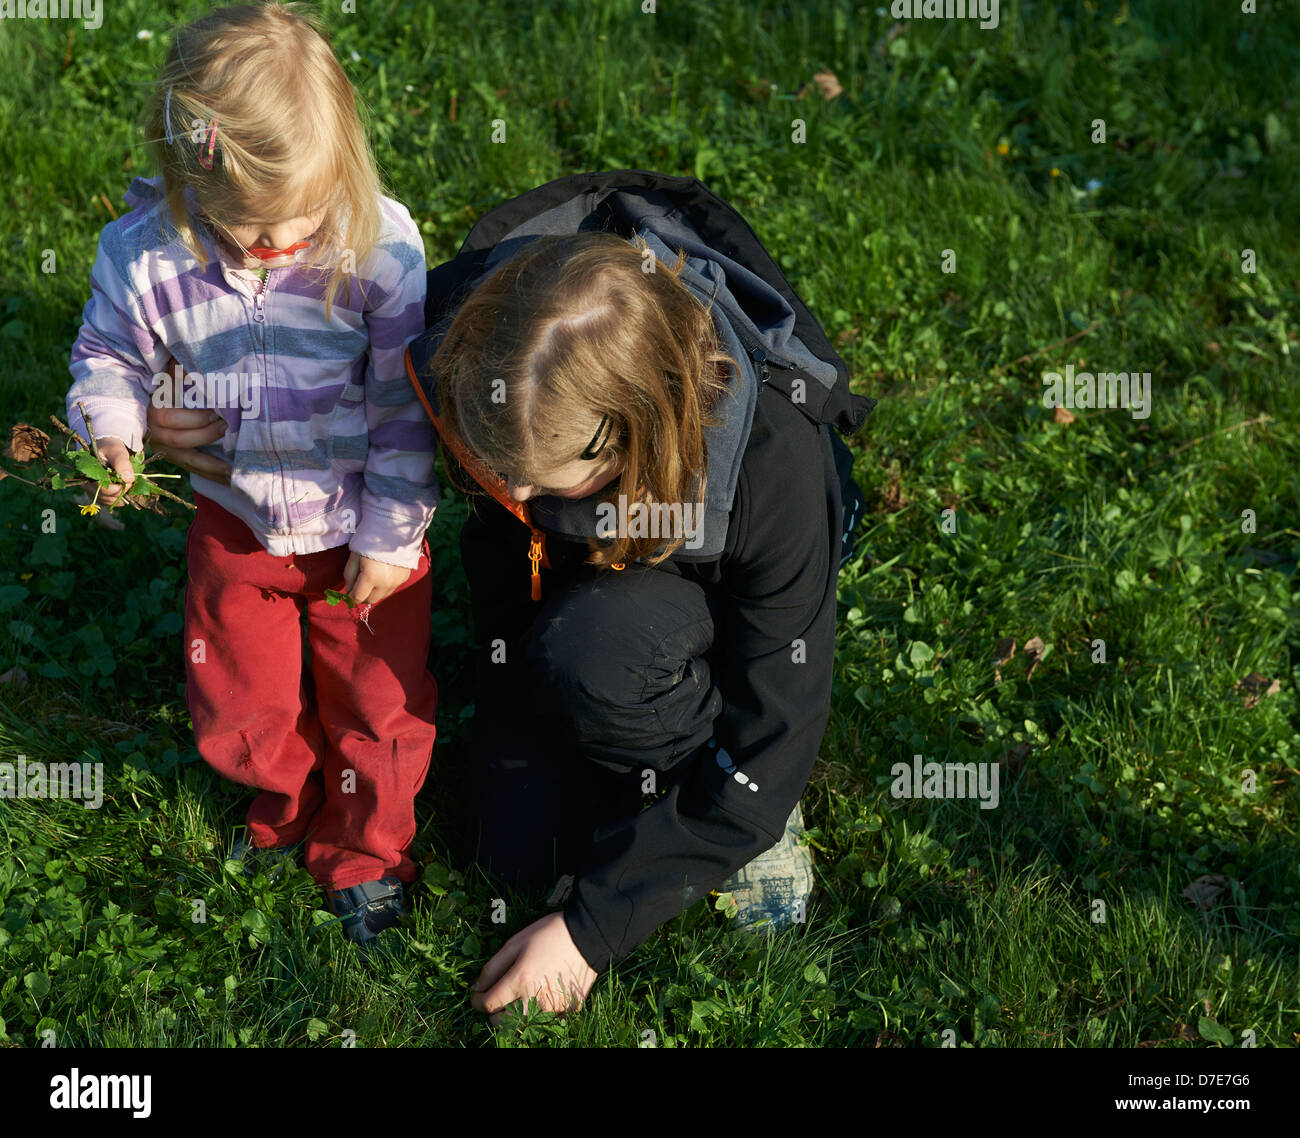 Deux enfants blonde jouant avec jardin avec gazon et fleurs l'heure d'été Banque D'Images